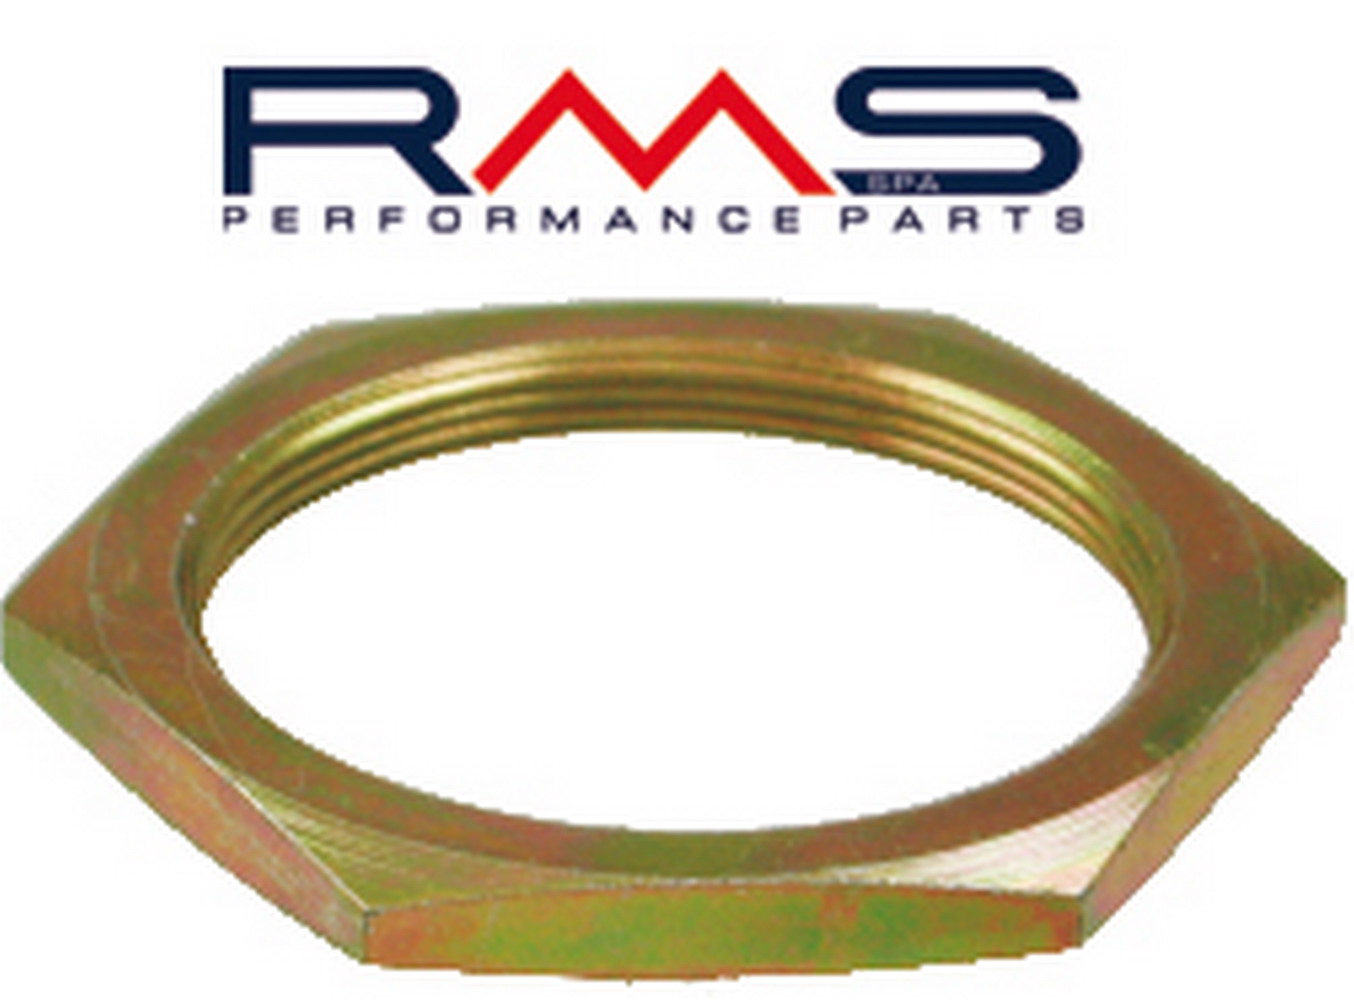 Obrázek produktu Rear clutch hub nut RMS 121850320 M38x1 (1 kus)